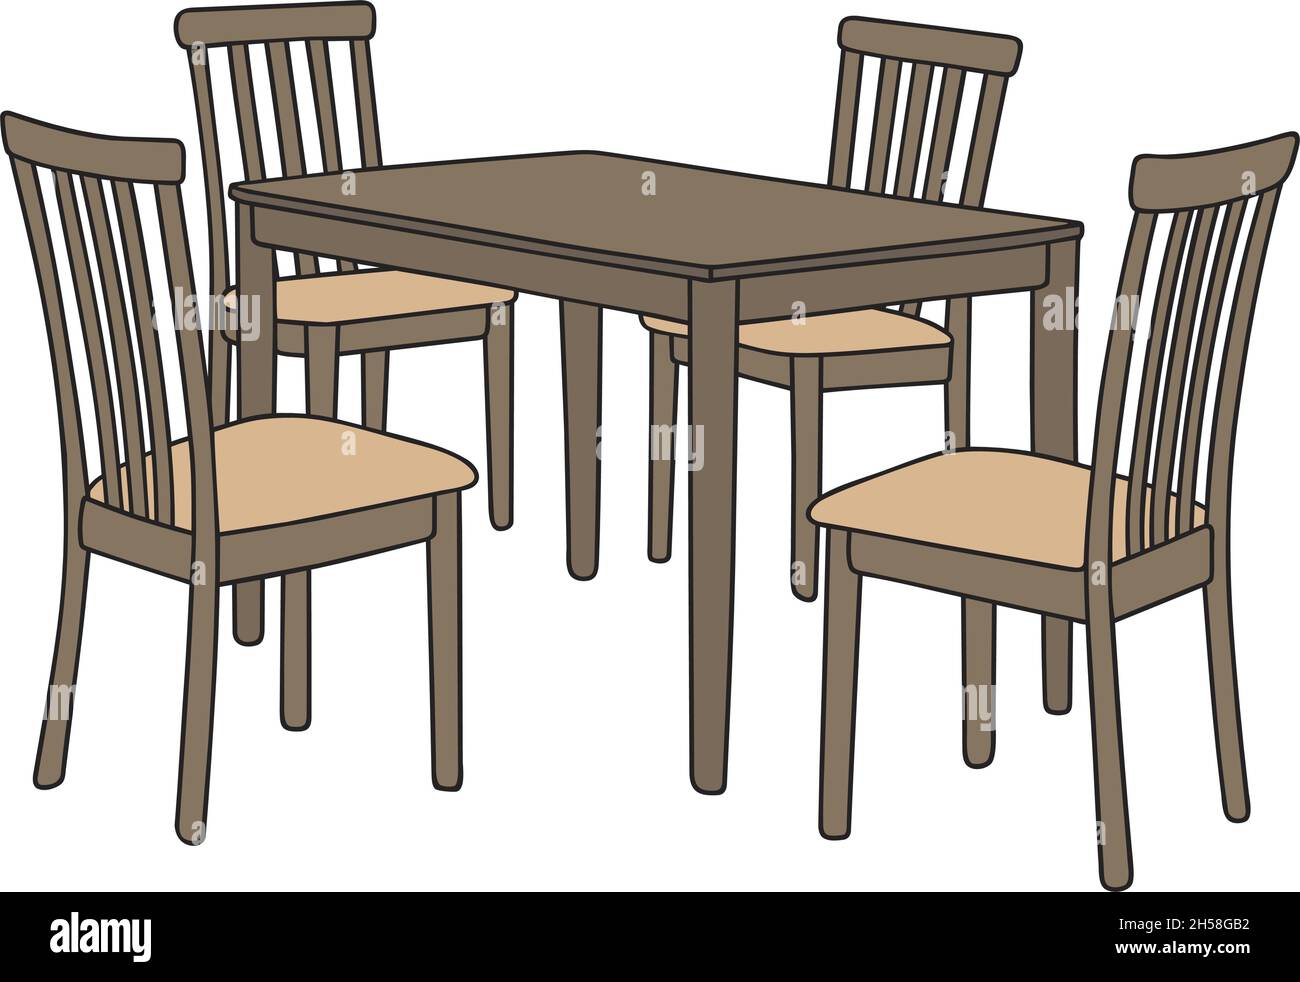 Il disegno a mano vettorizzato del tavolo e quattro sedie Immagine e  Vettoriale - Alamy